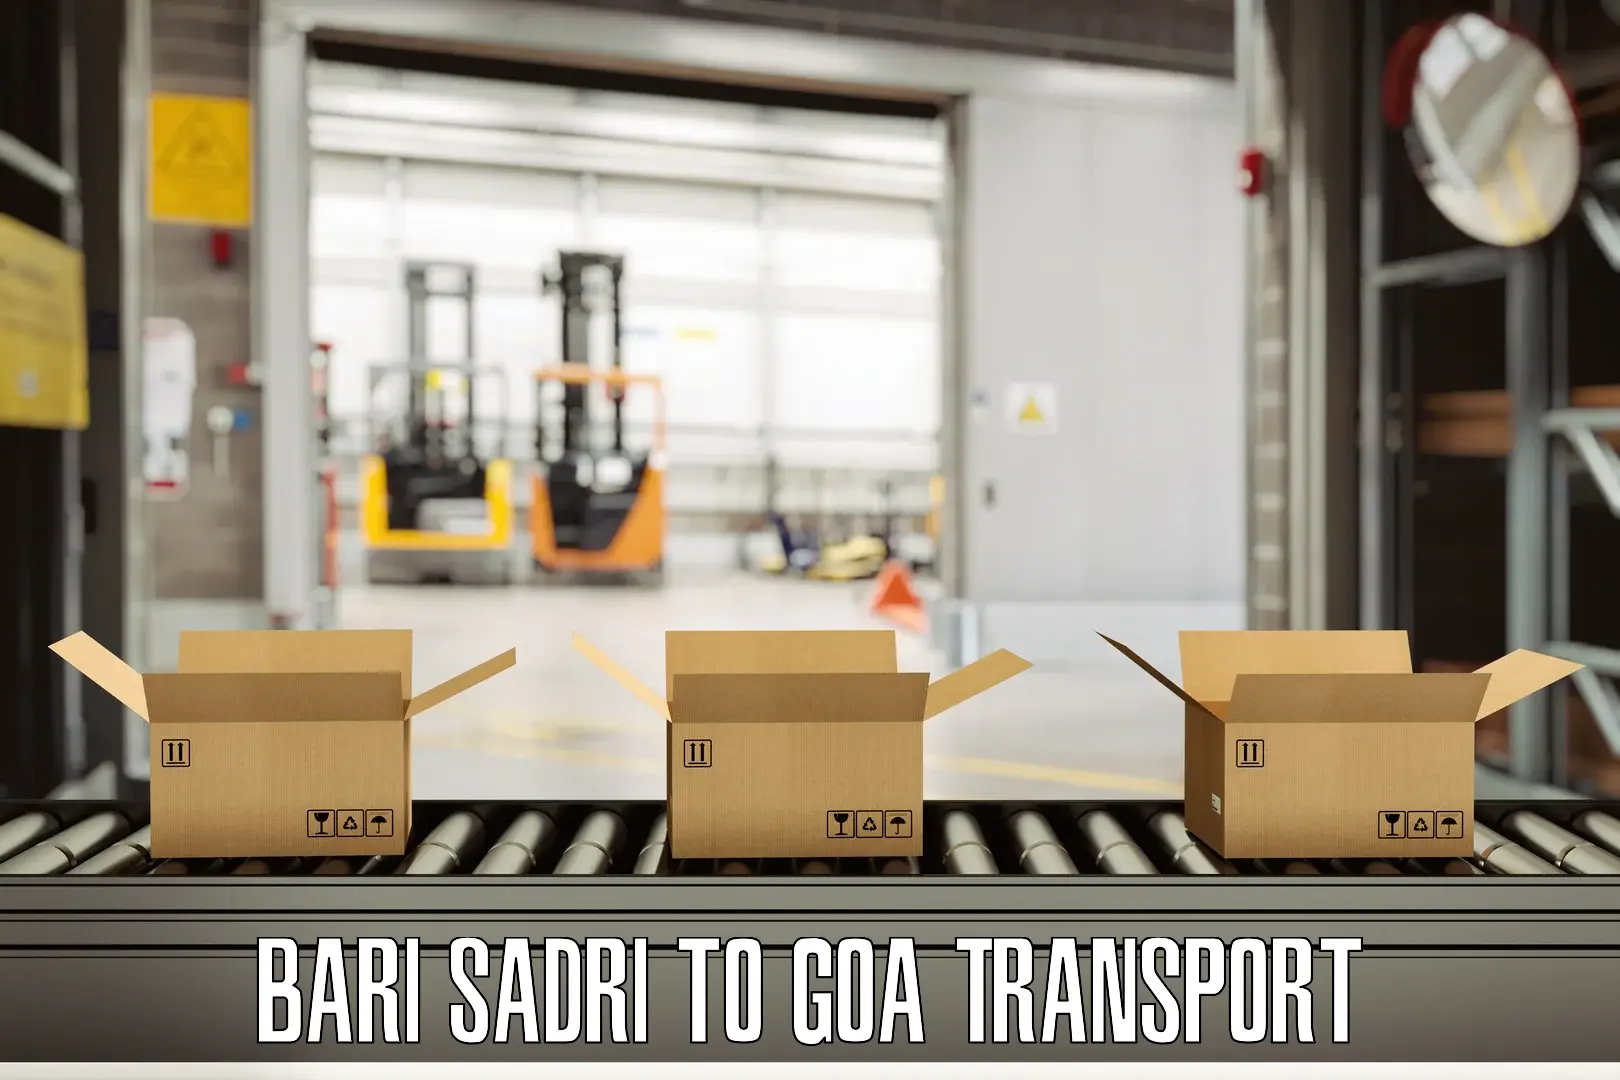 Furniture transport service Bari Sadri to Ponda